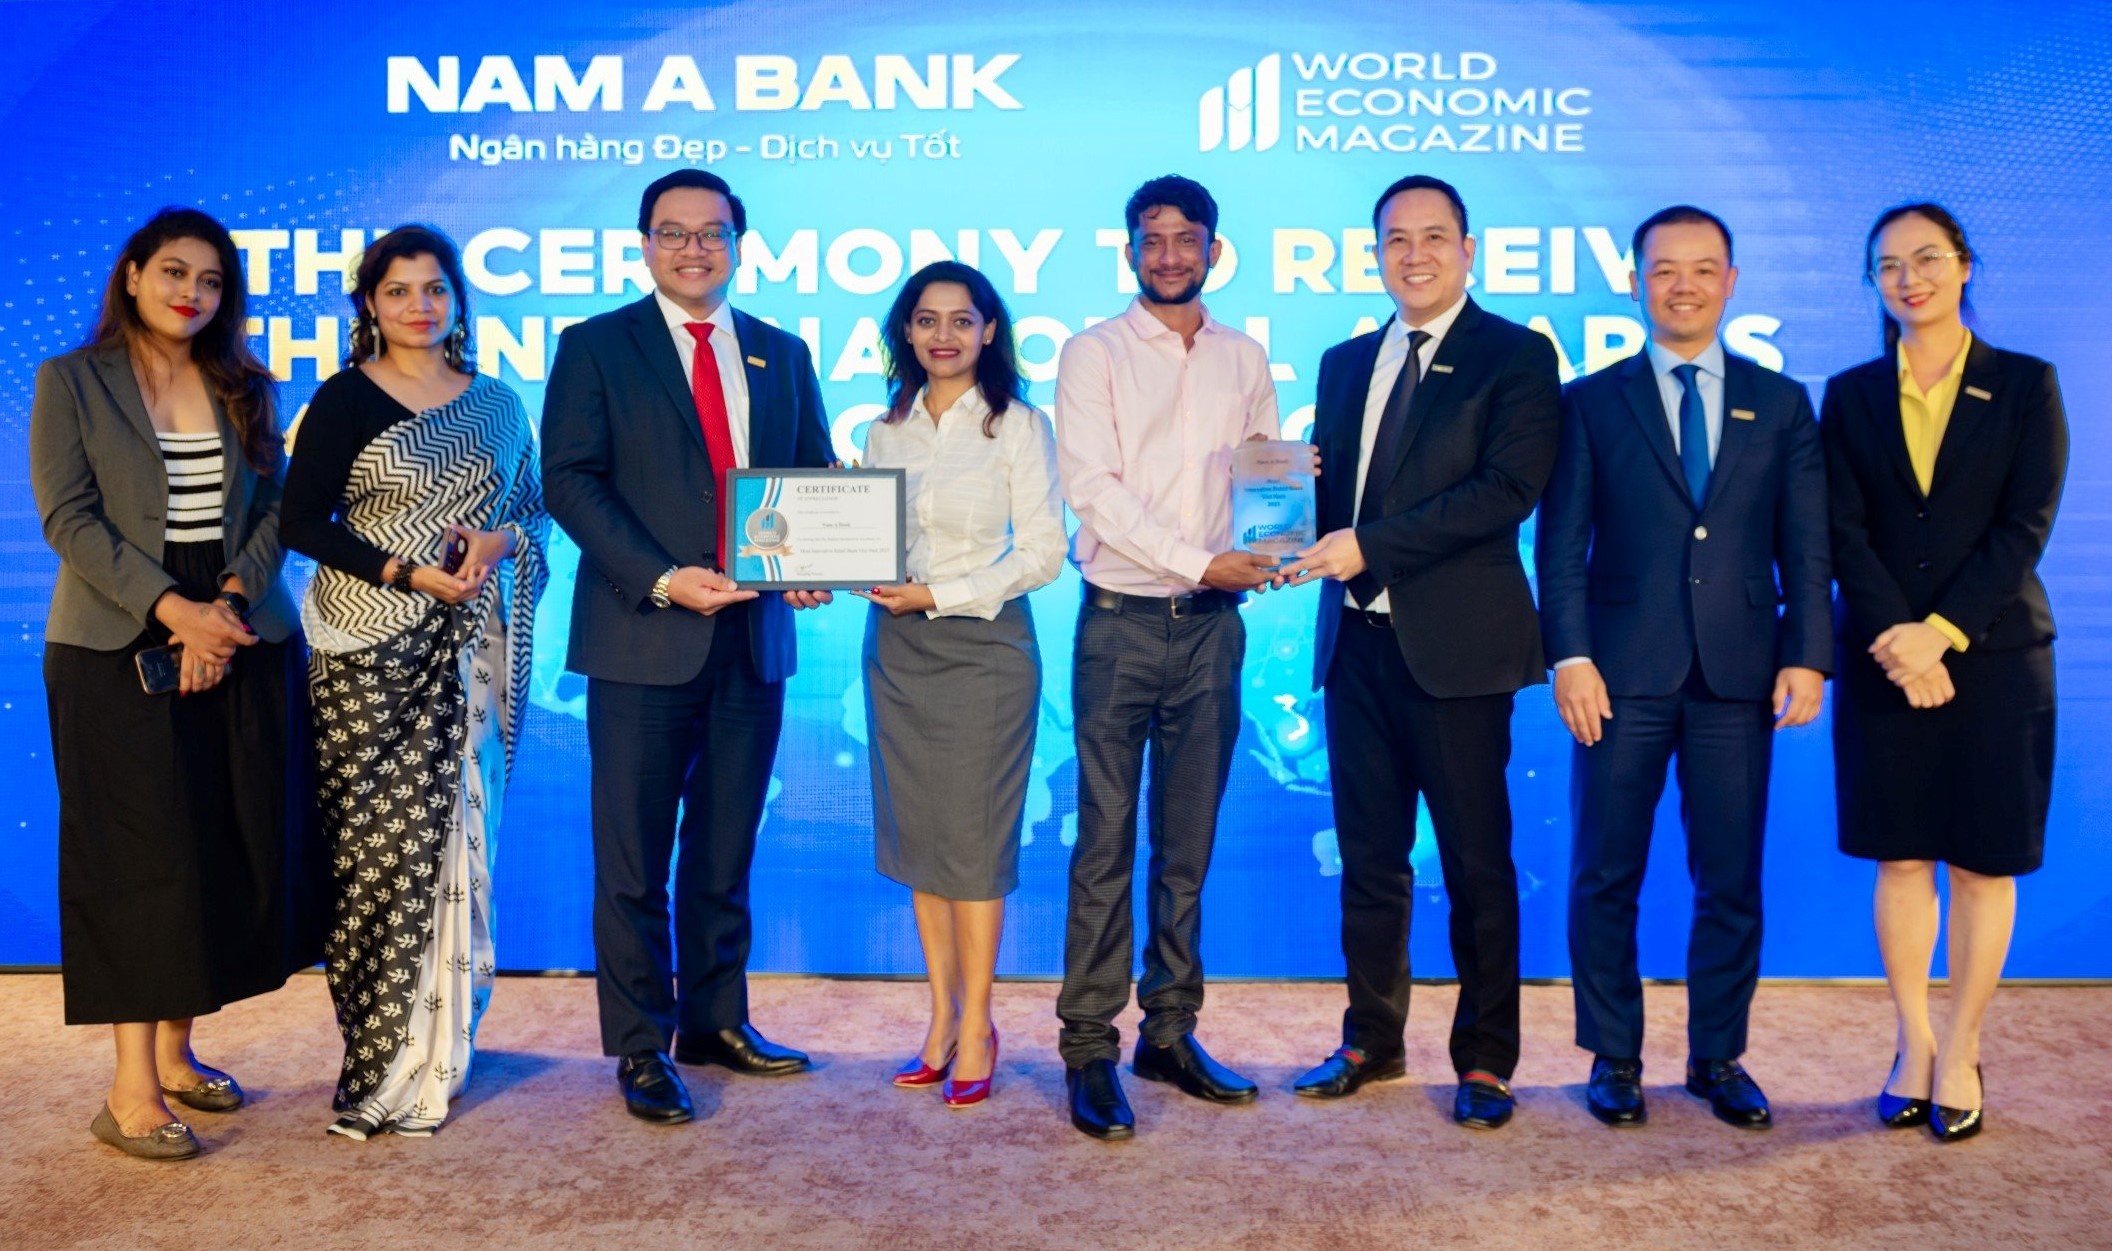 Đại diện Nam A Bank nhận giải thưởng từ Tạp chí World Economic Magazine.